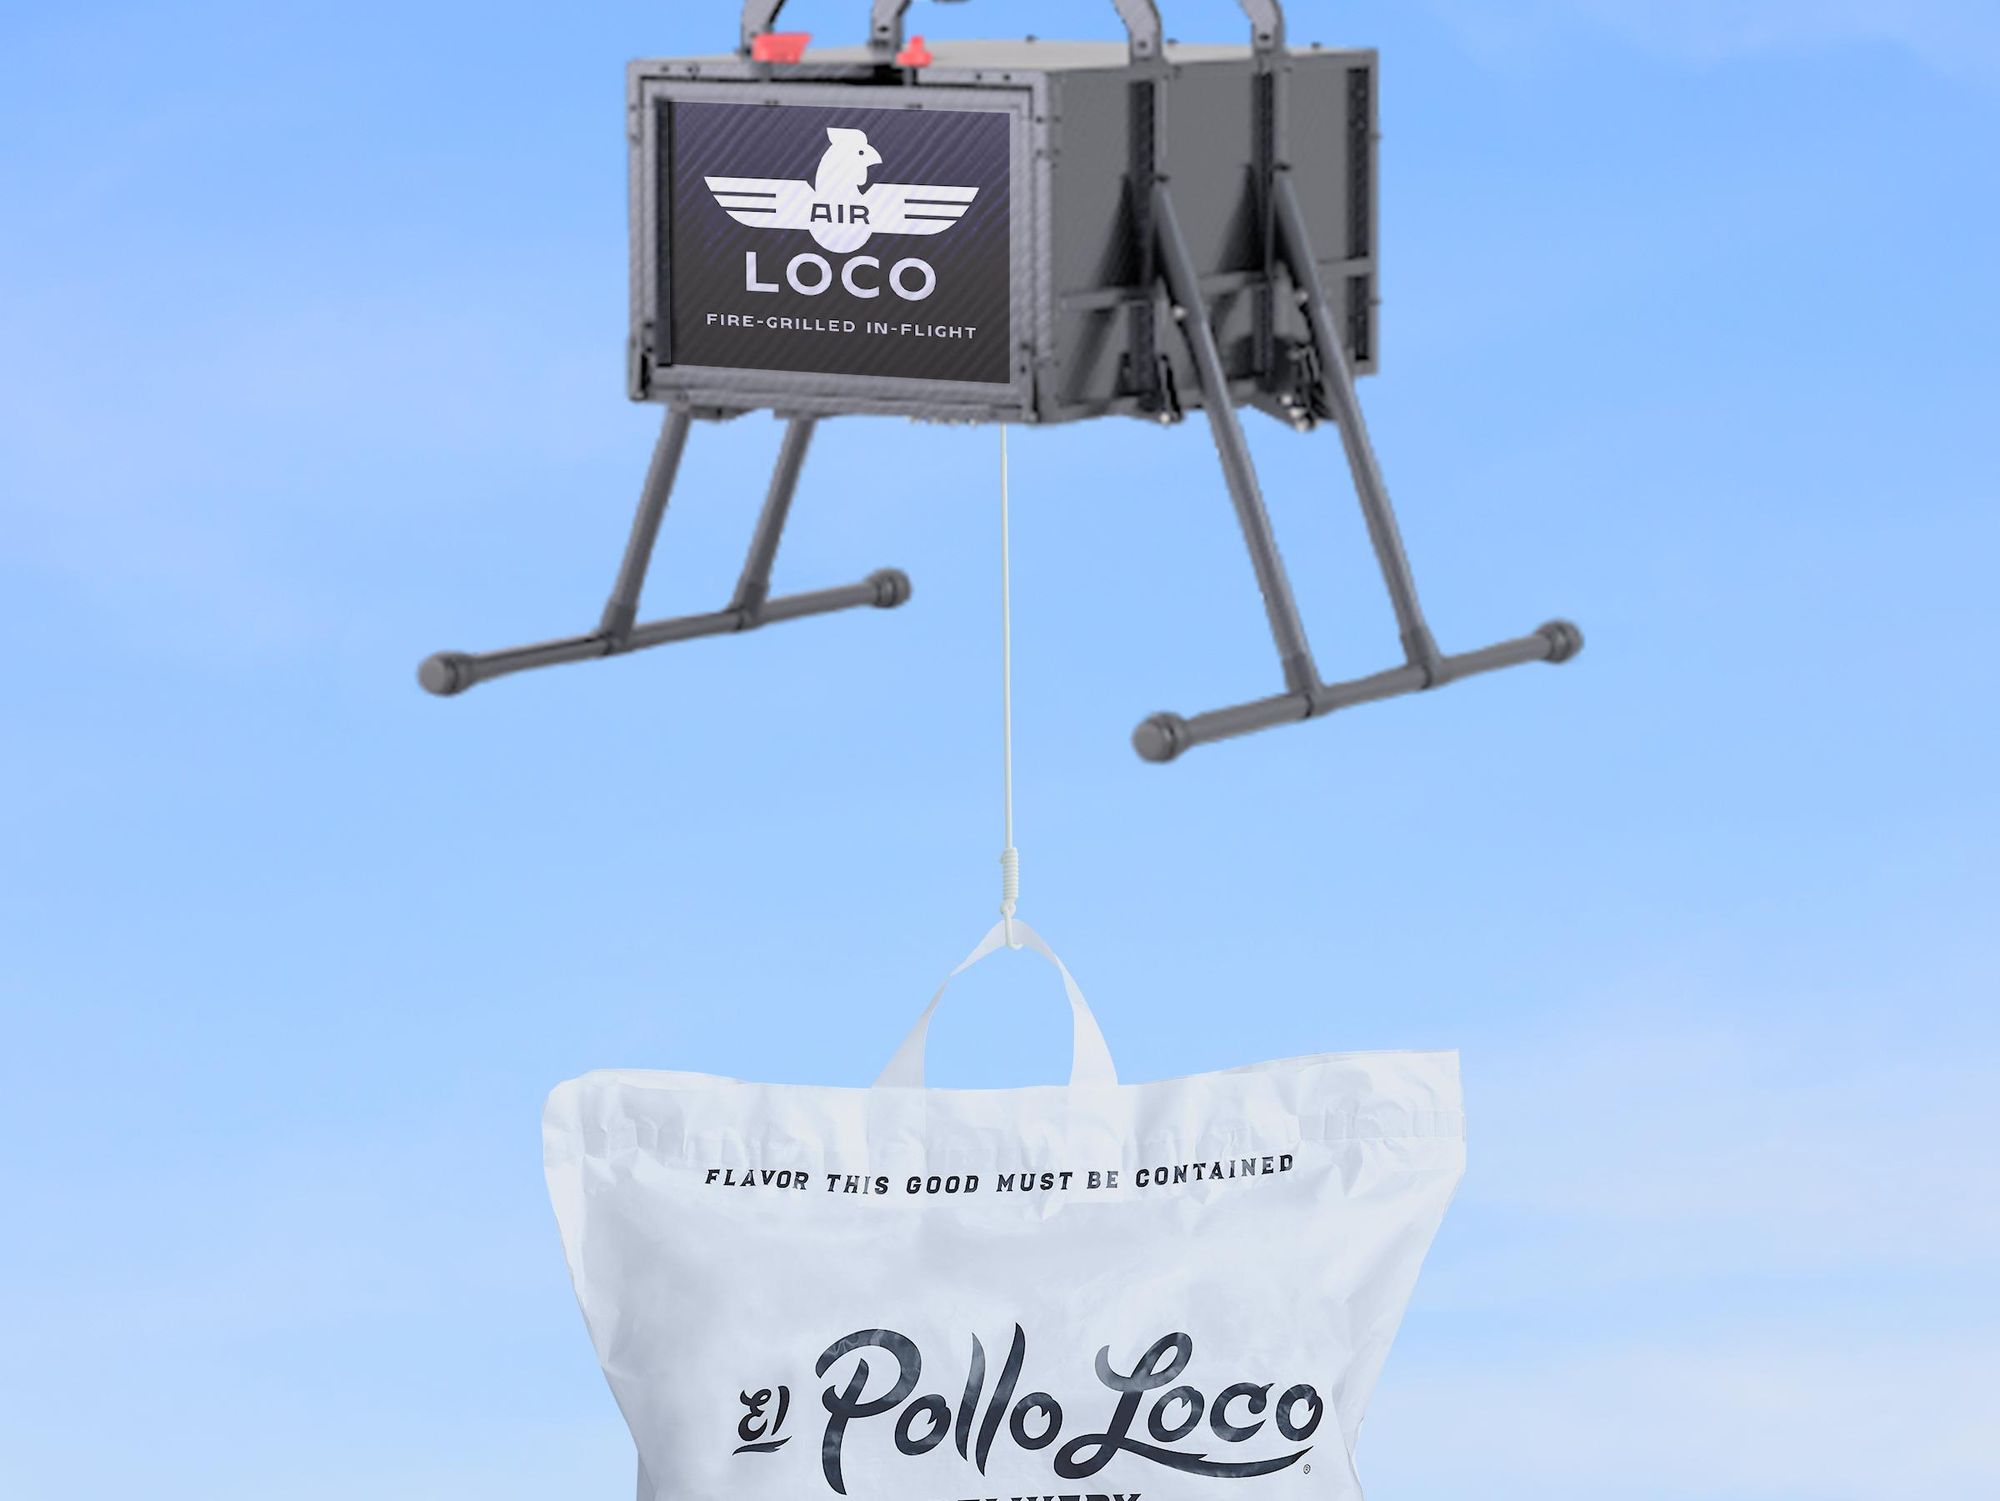 El Pollo Loco Tests 'Air Loco' Drone Delivery Despite Concerns